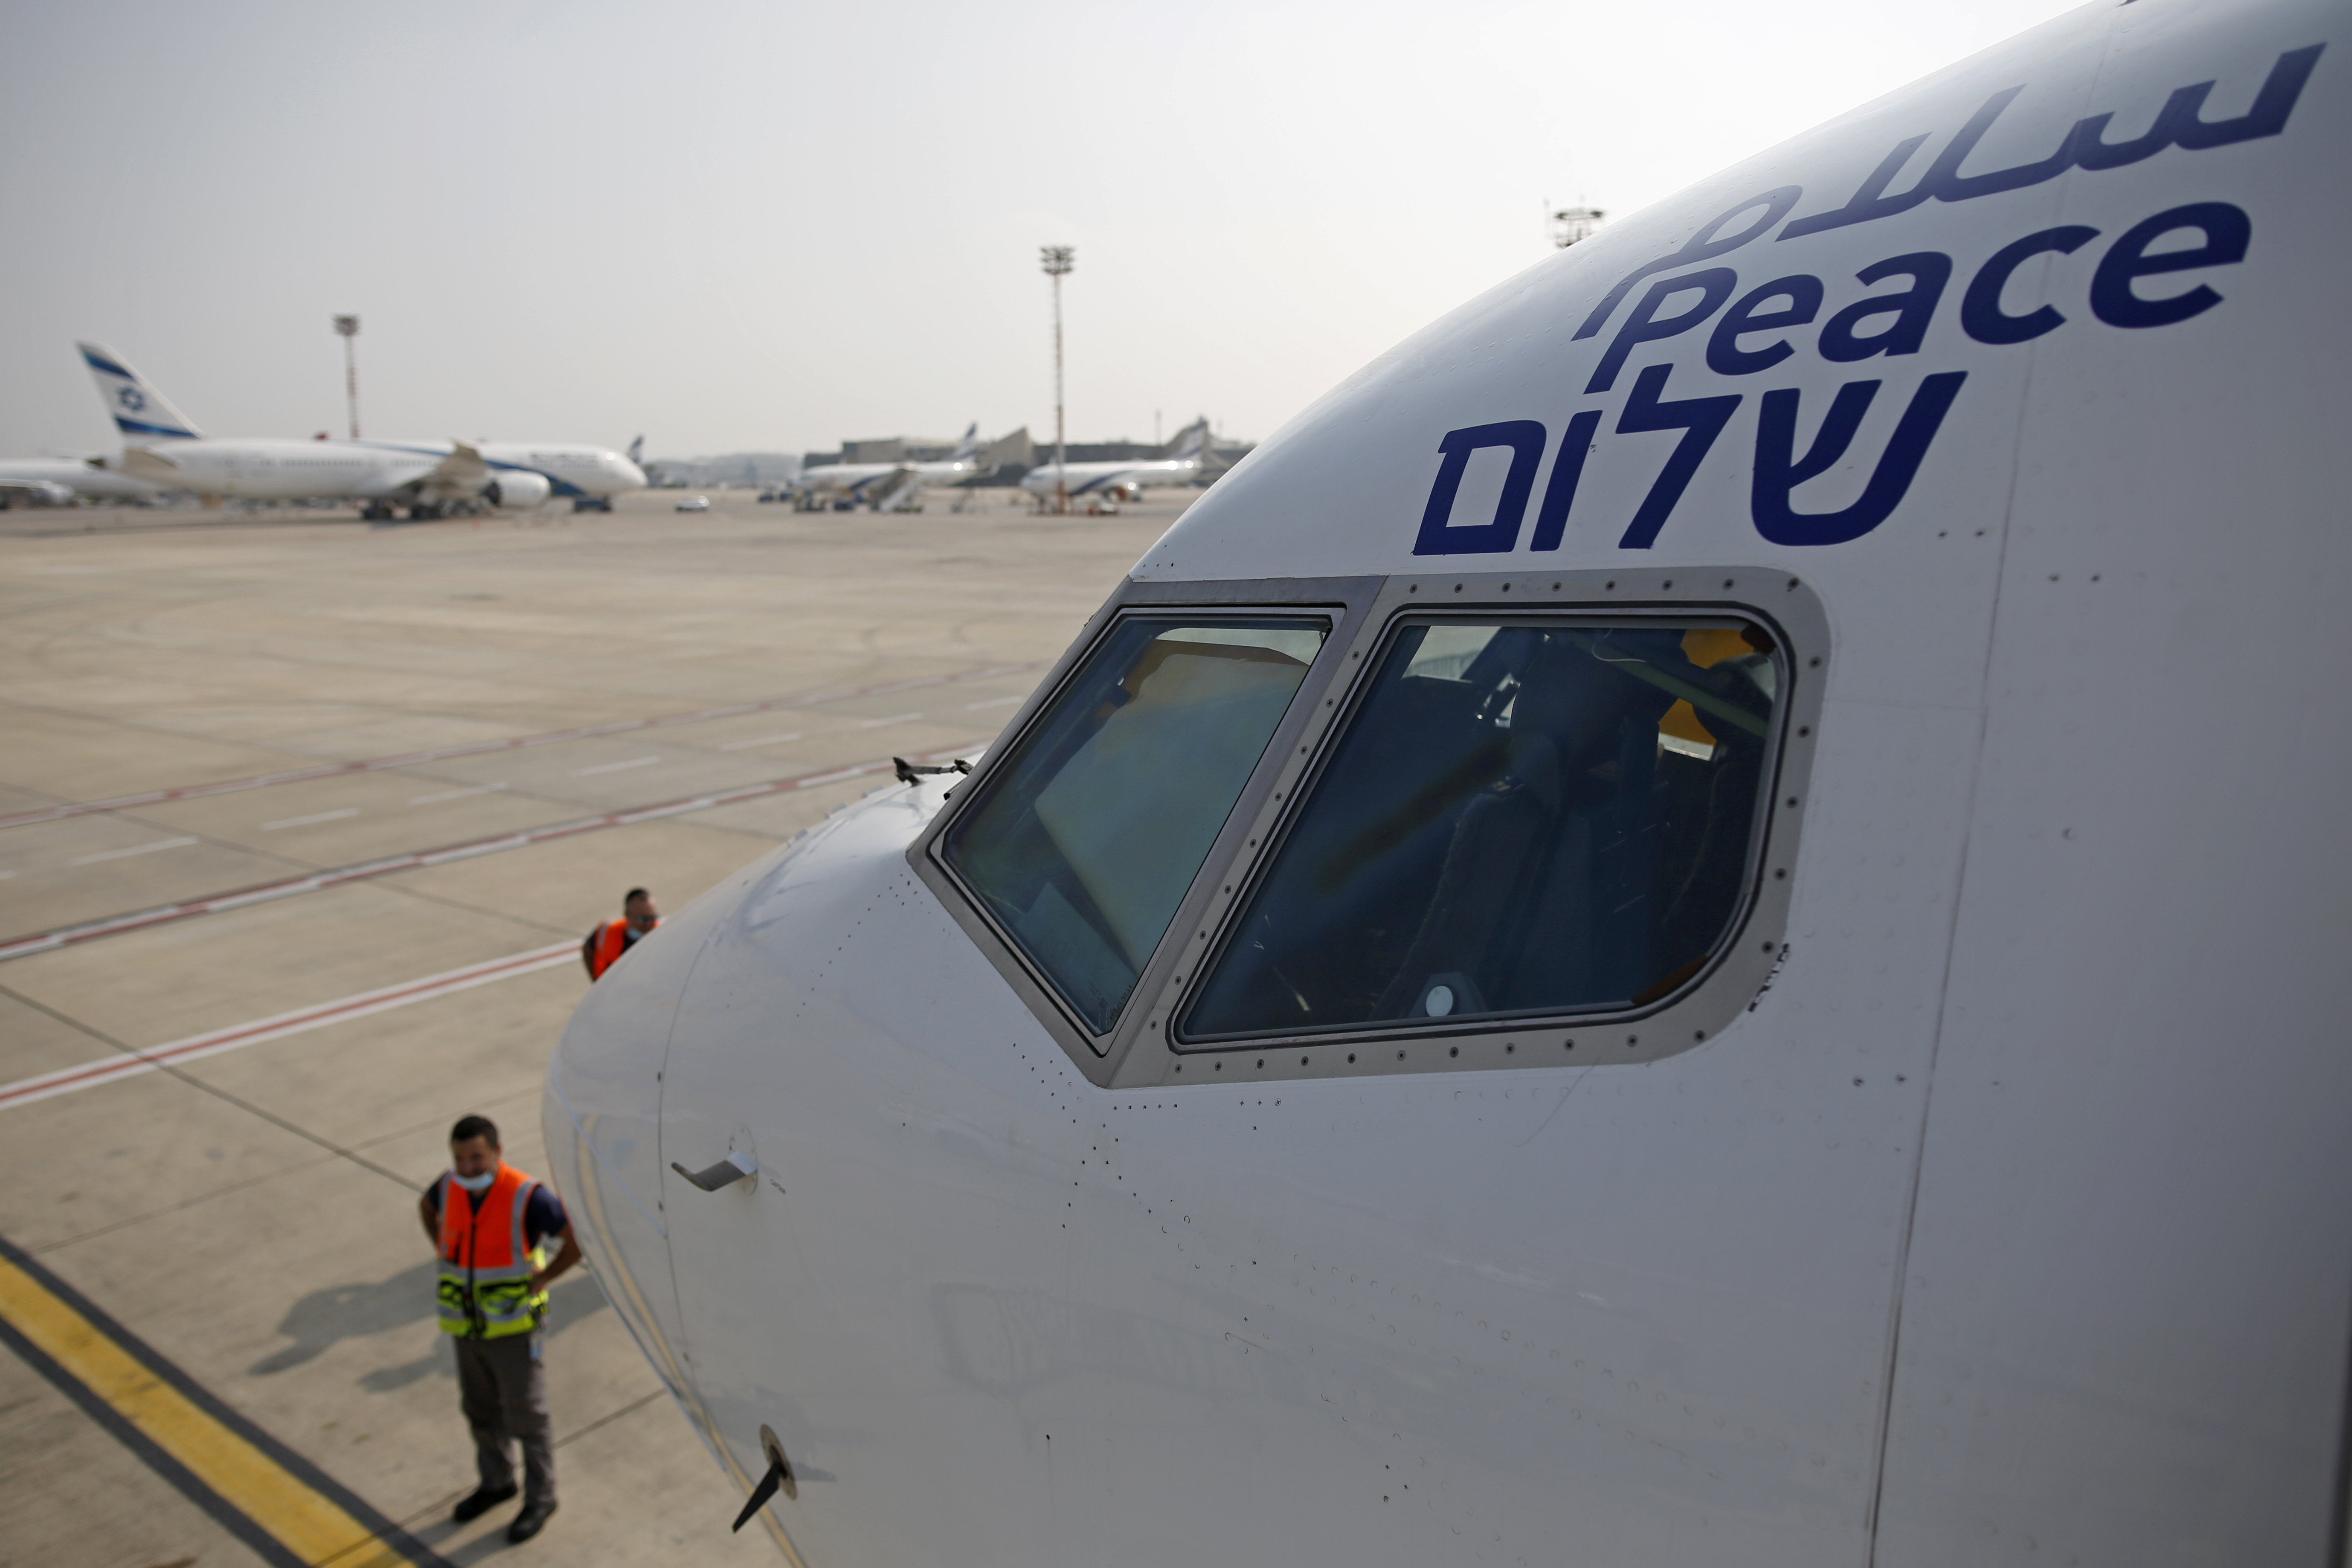 Днес от Тел Авив излетя първият самолет, изпълняващ пряк търговски